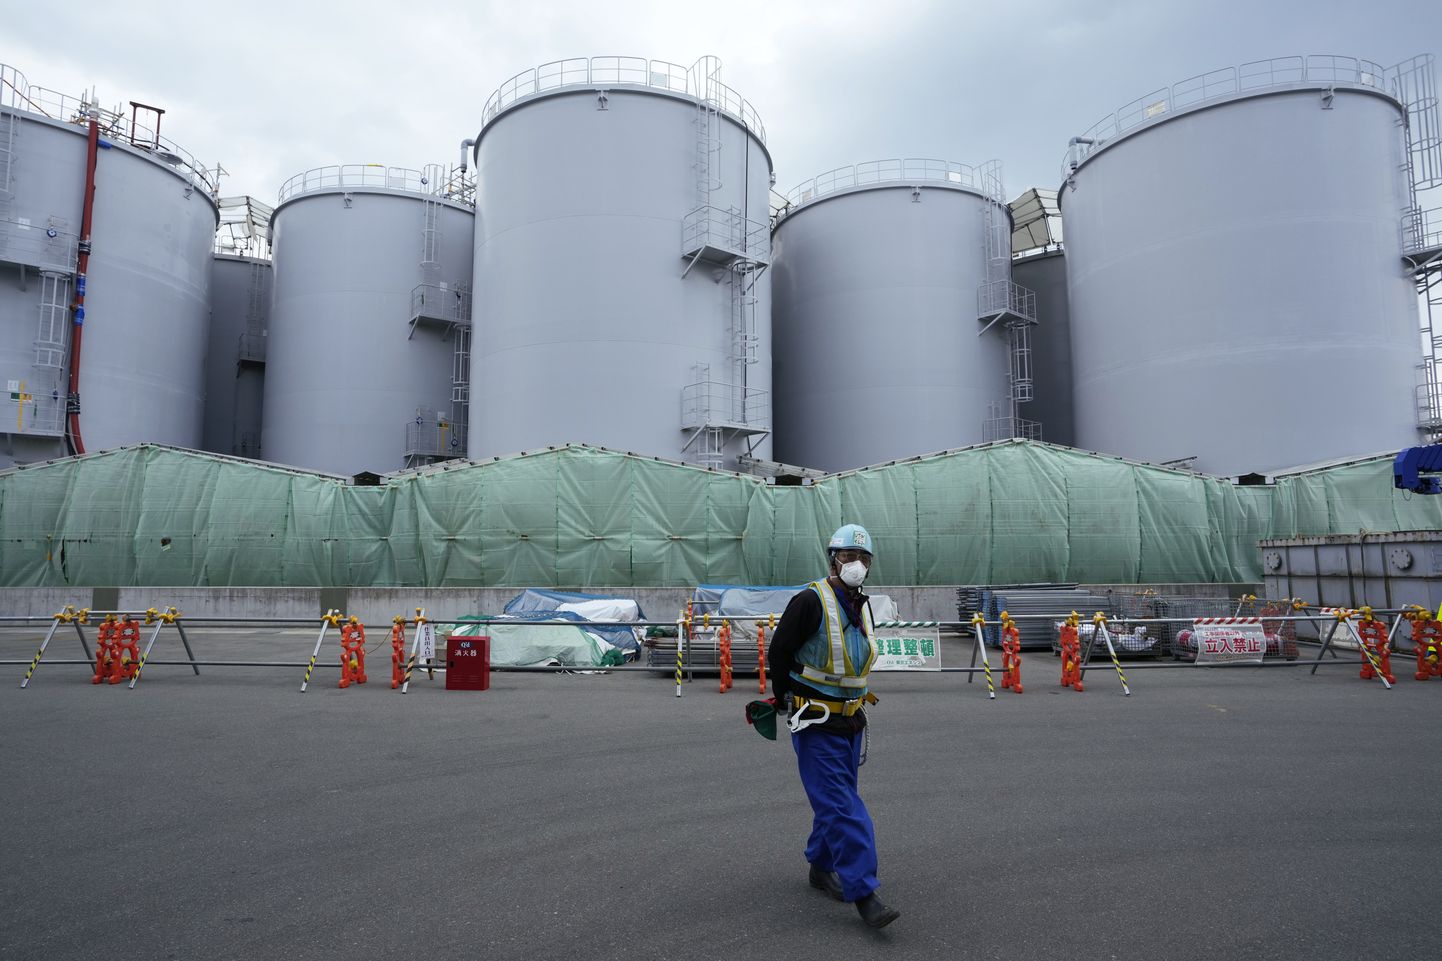 Saastunud vee mahutid tsunami tõttu rikutud Fukushima Daiichi tuumaelektrijaamas.